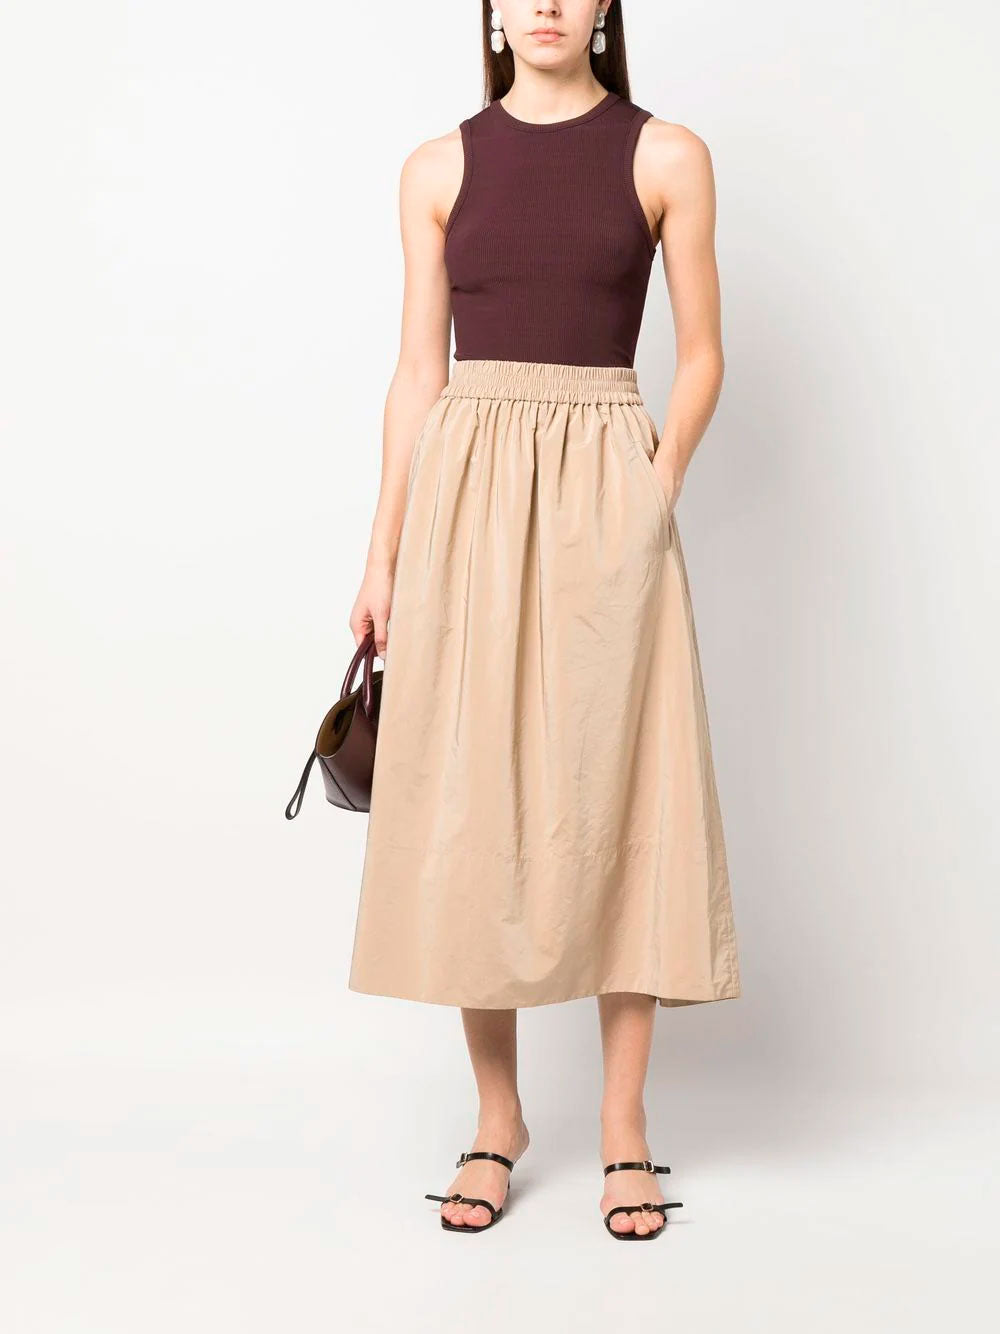 Pleated A-line midi skirt